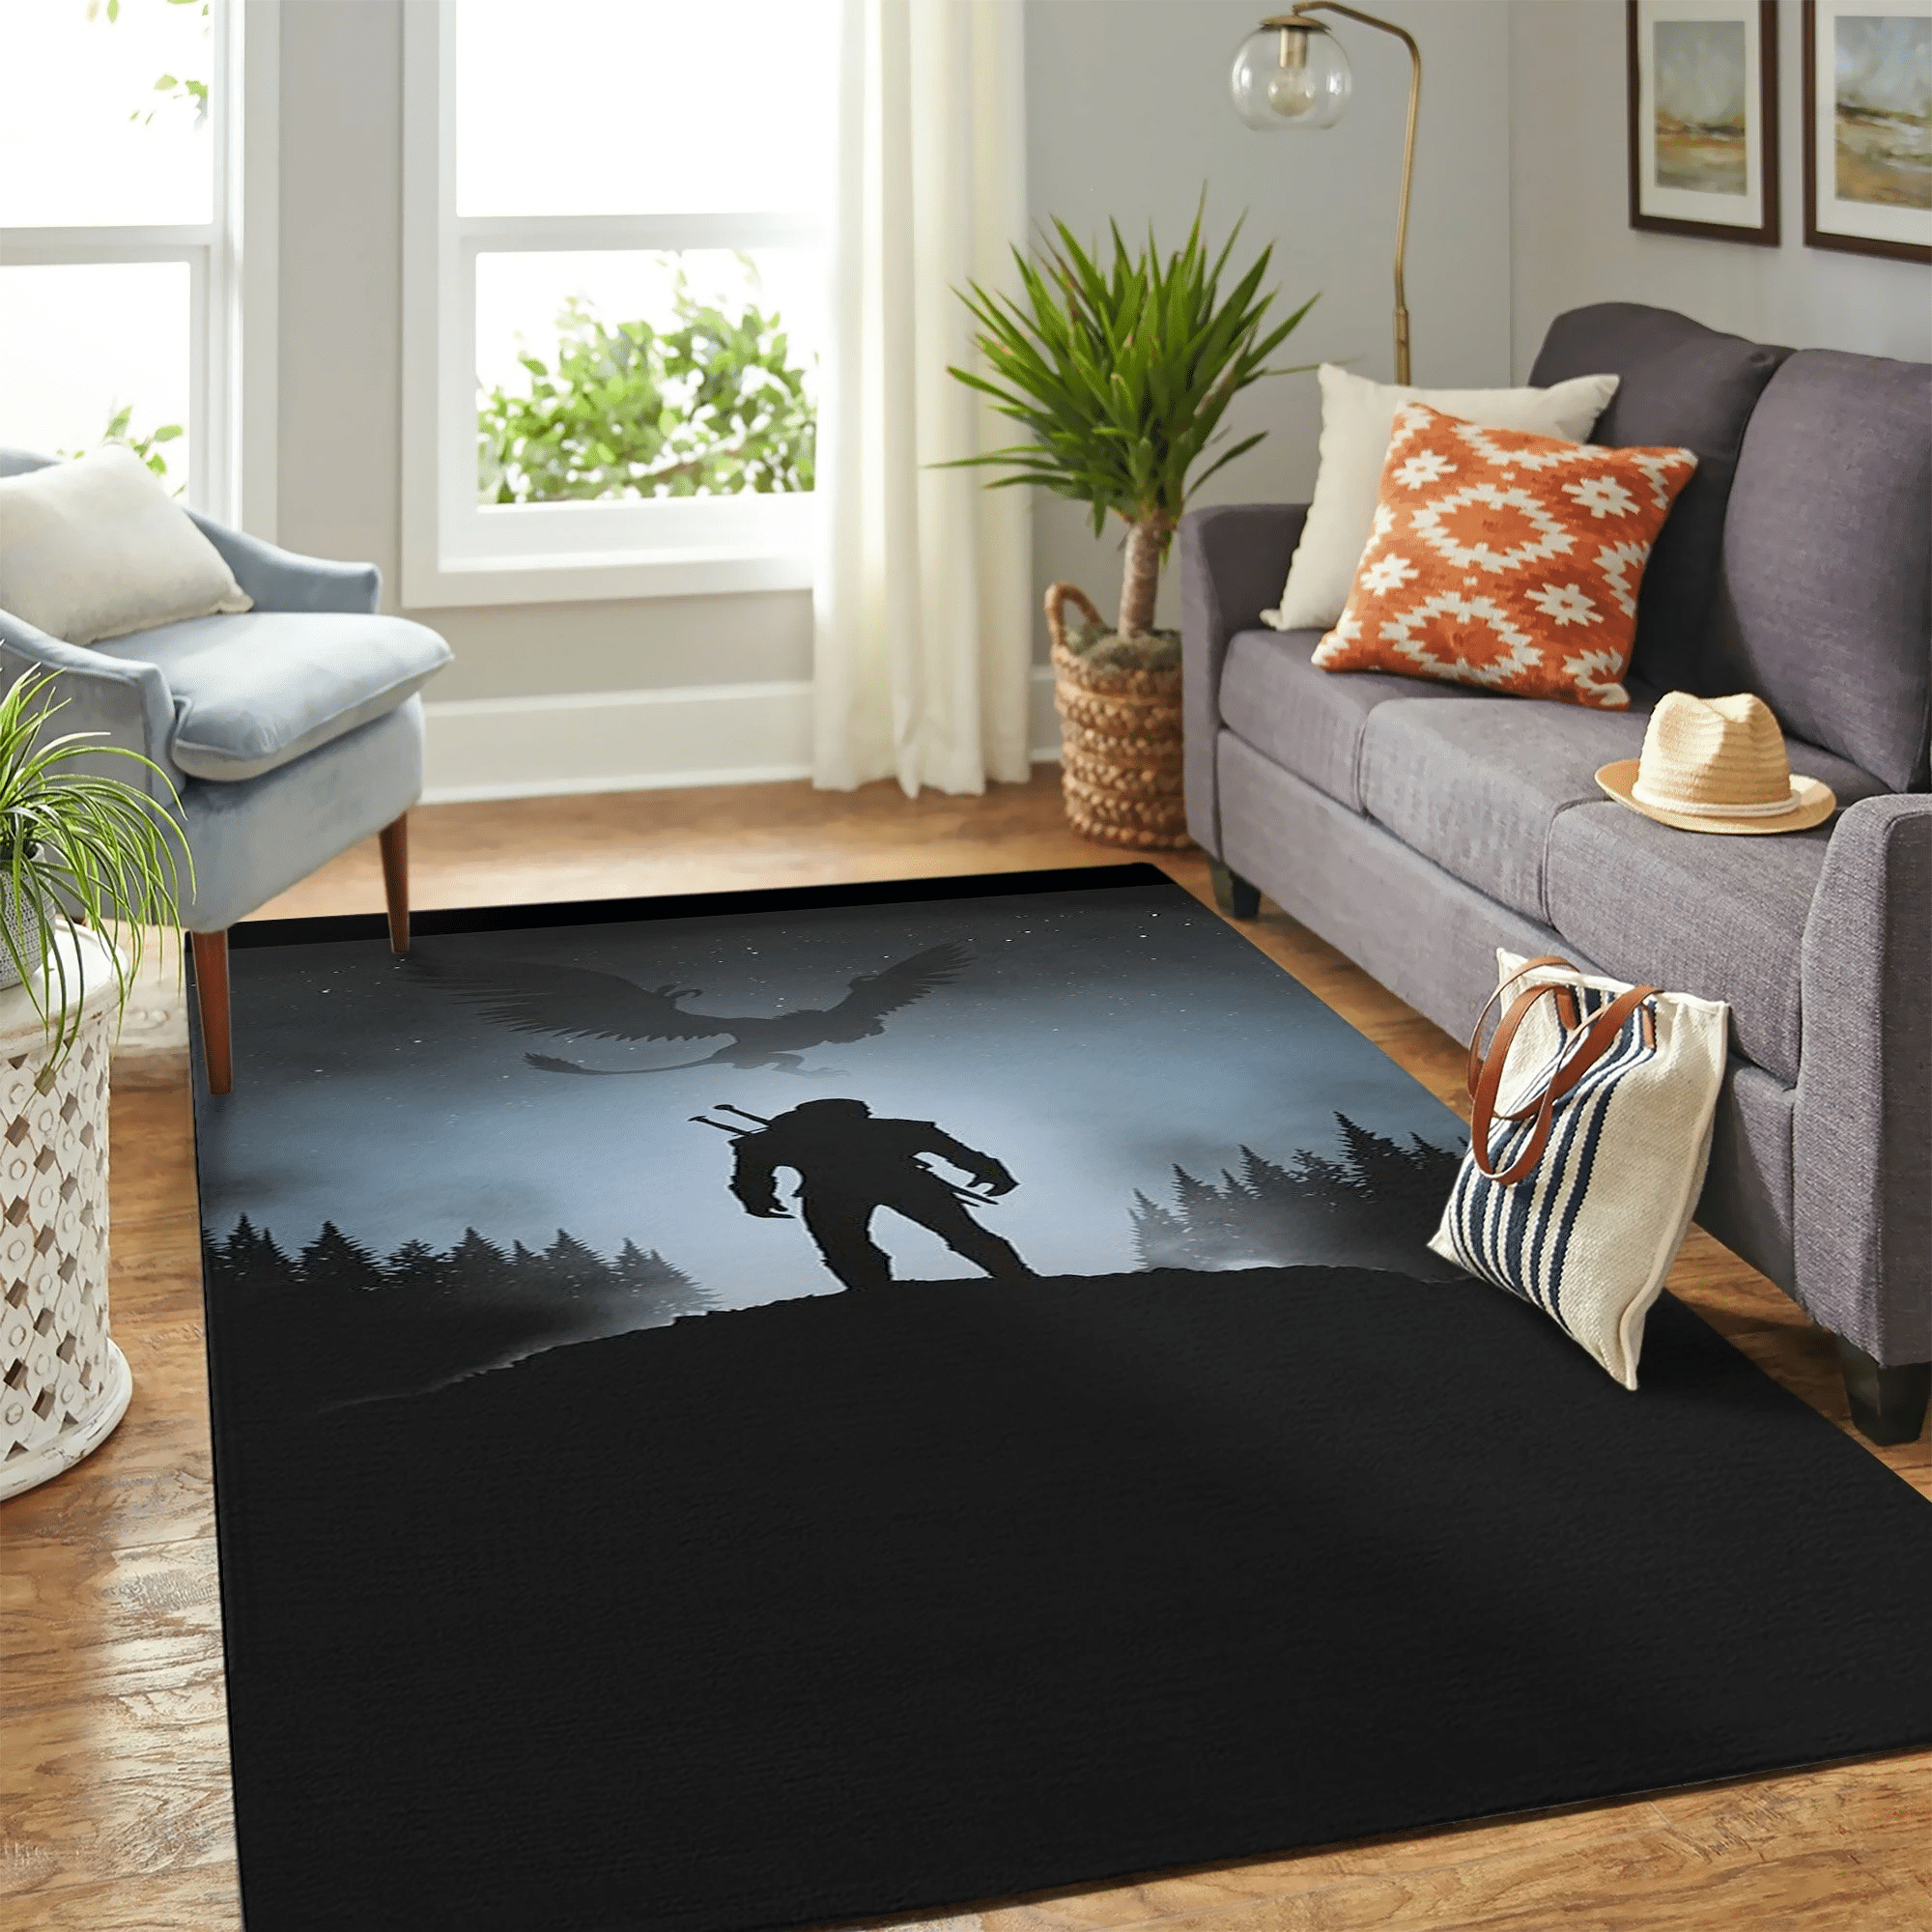 The Witcher Night Carpet Floor Area Rug Chrismas Gift - Indoor Outdoor Rugs